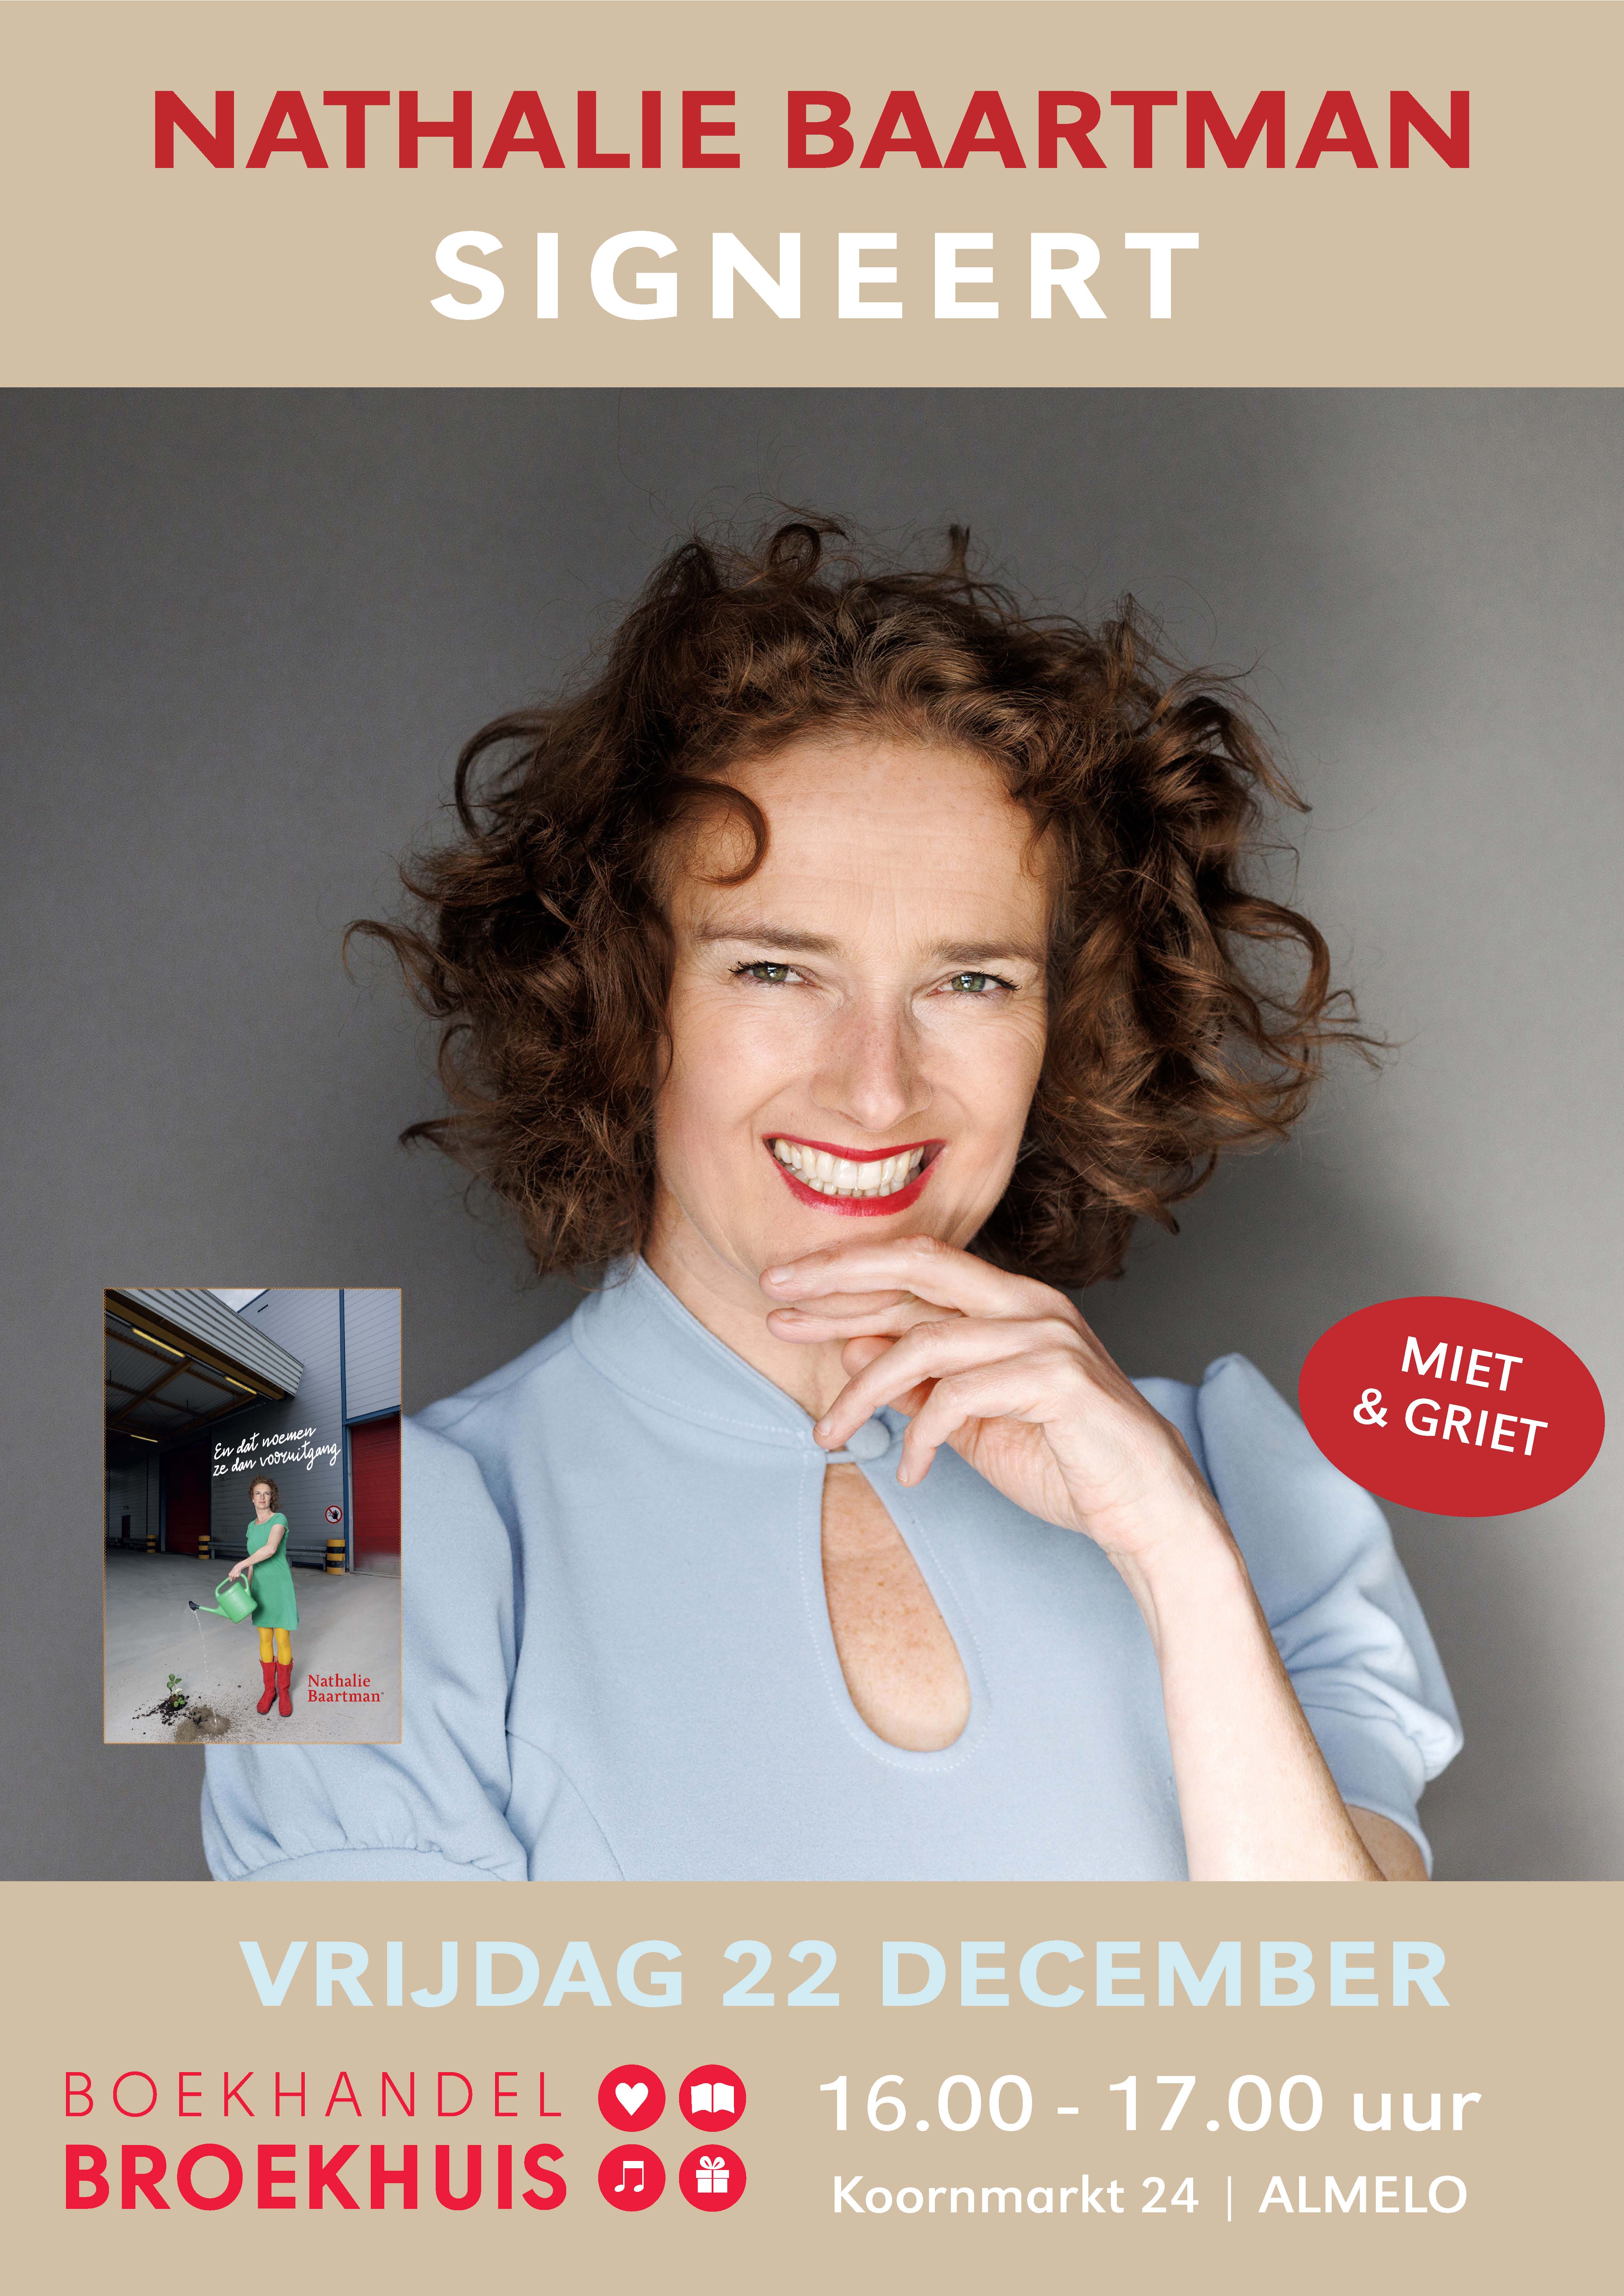 Nathalie Baartman signeert haar bundel op 22 december bij Bokehandel Broekhuis Almelo